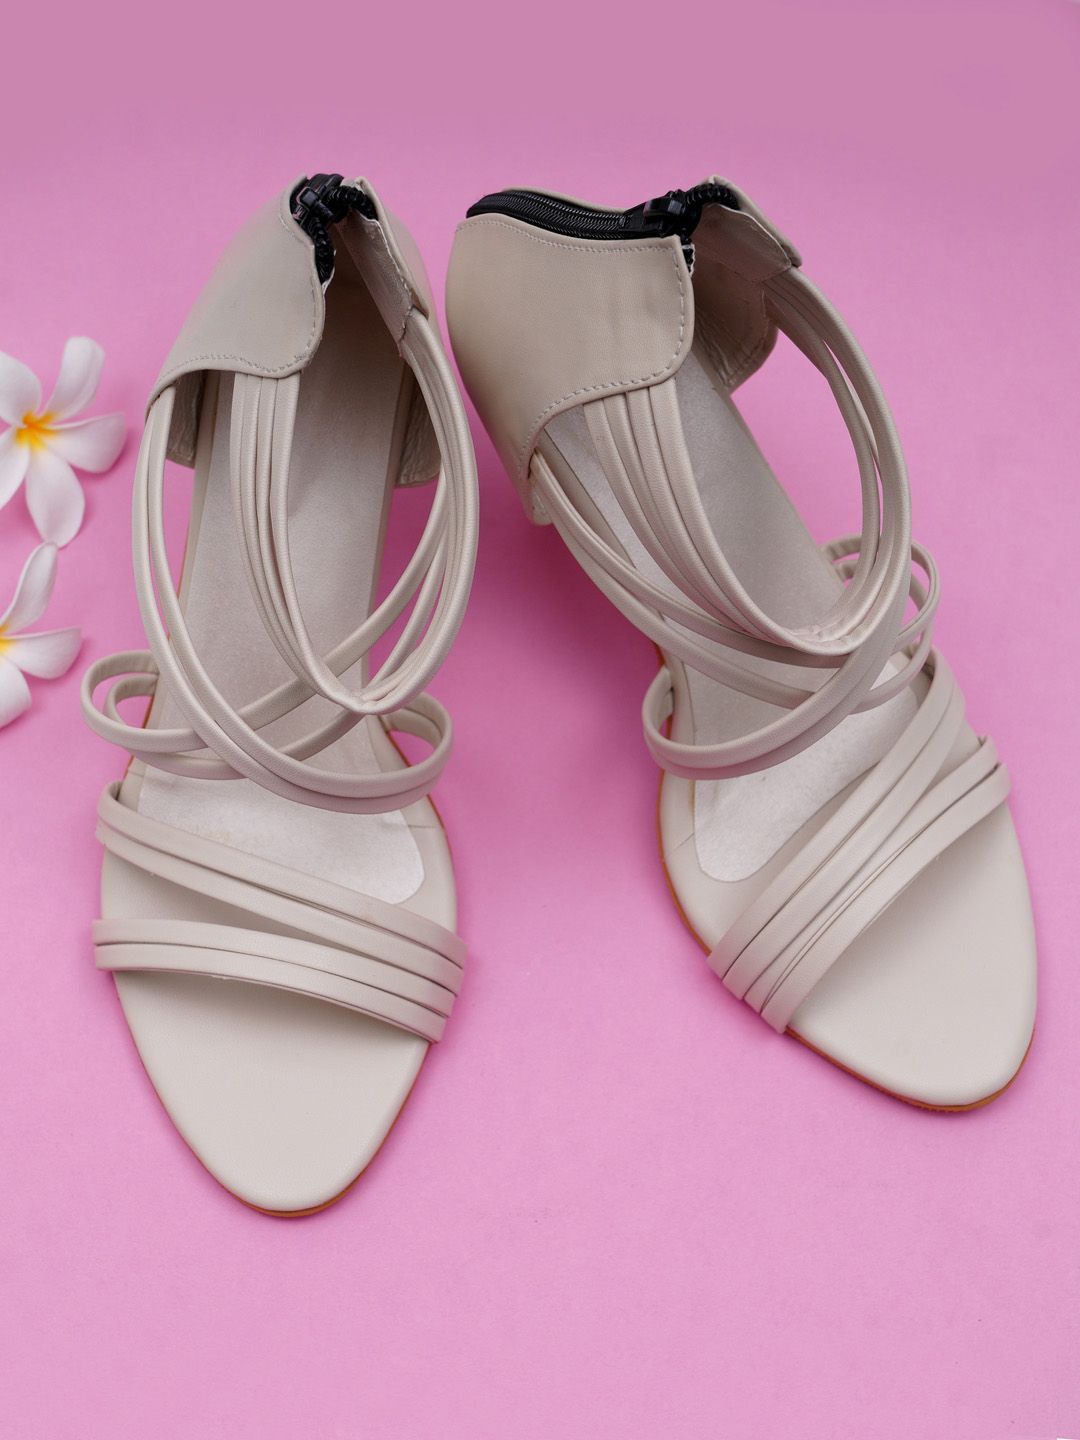 Misto Cream-Coloured PU Sandals Price in India